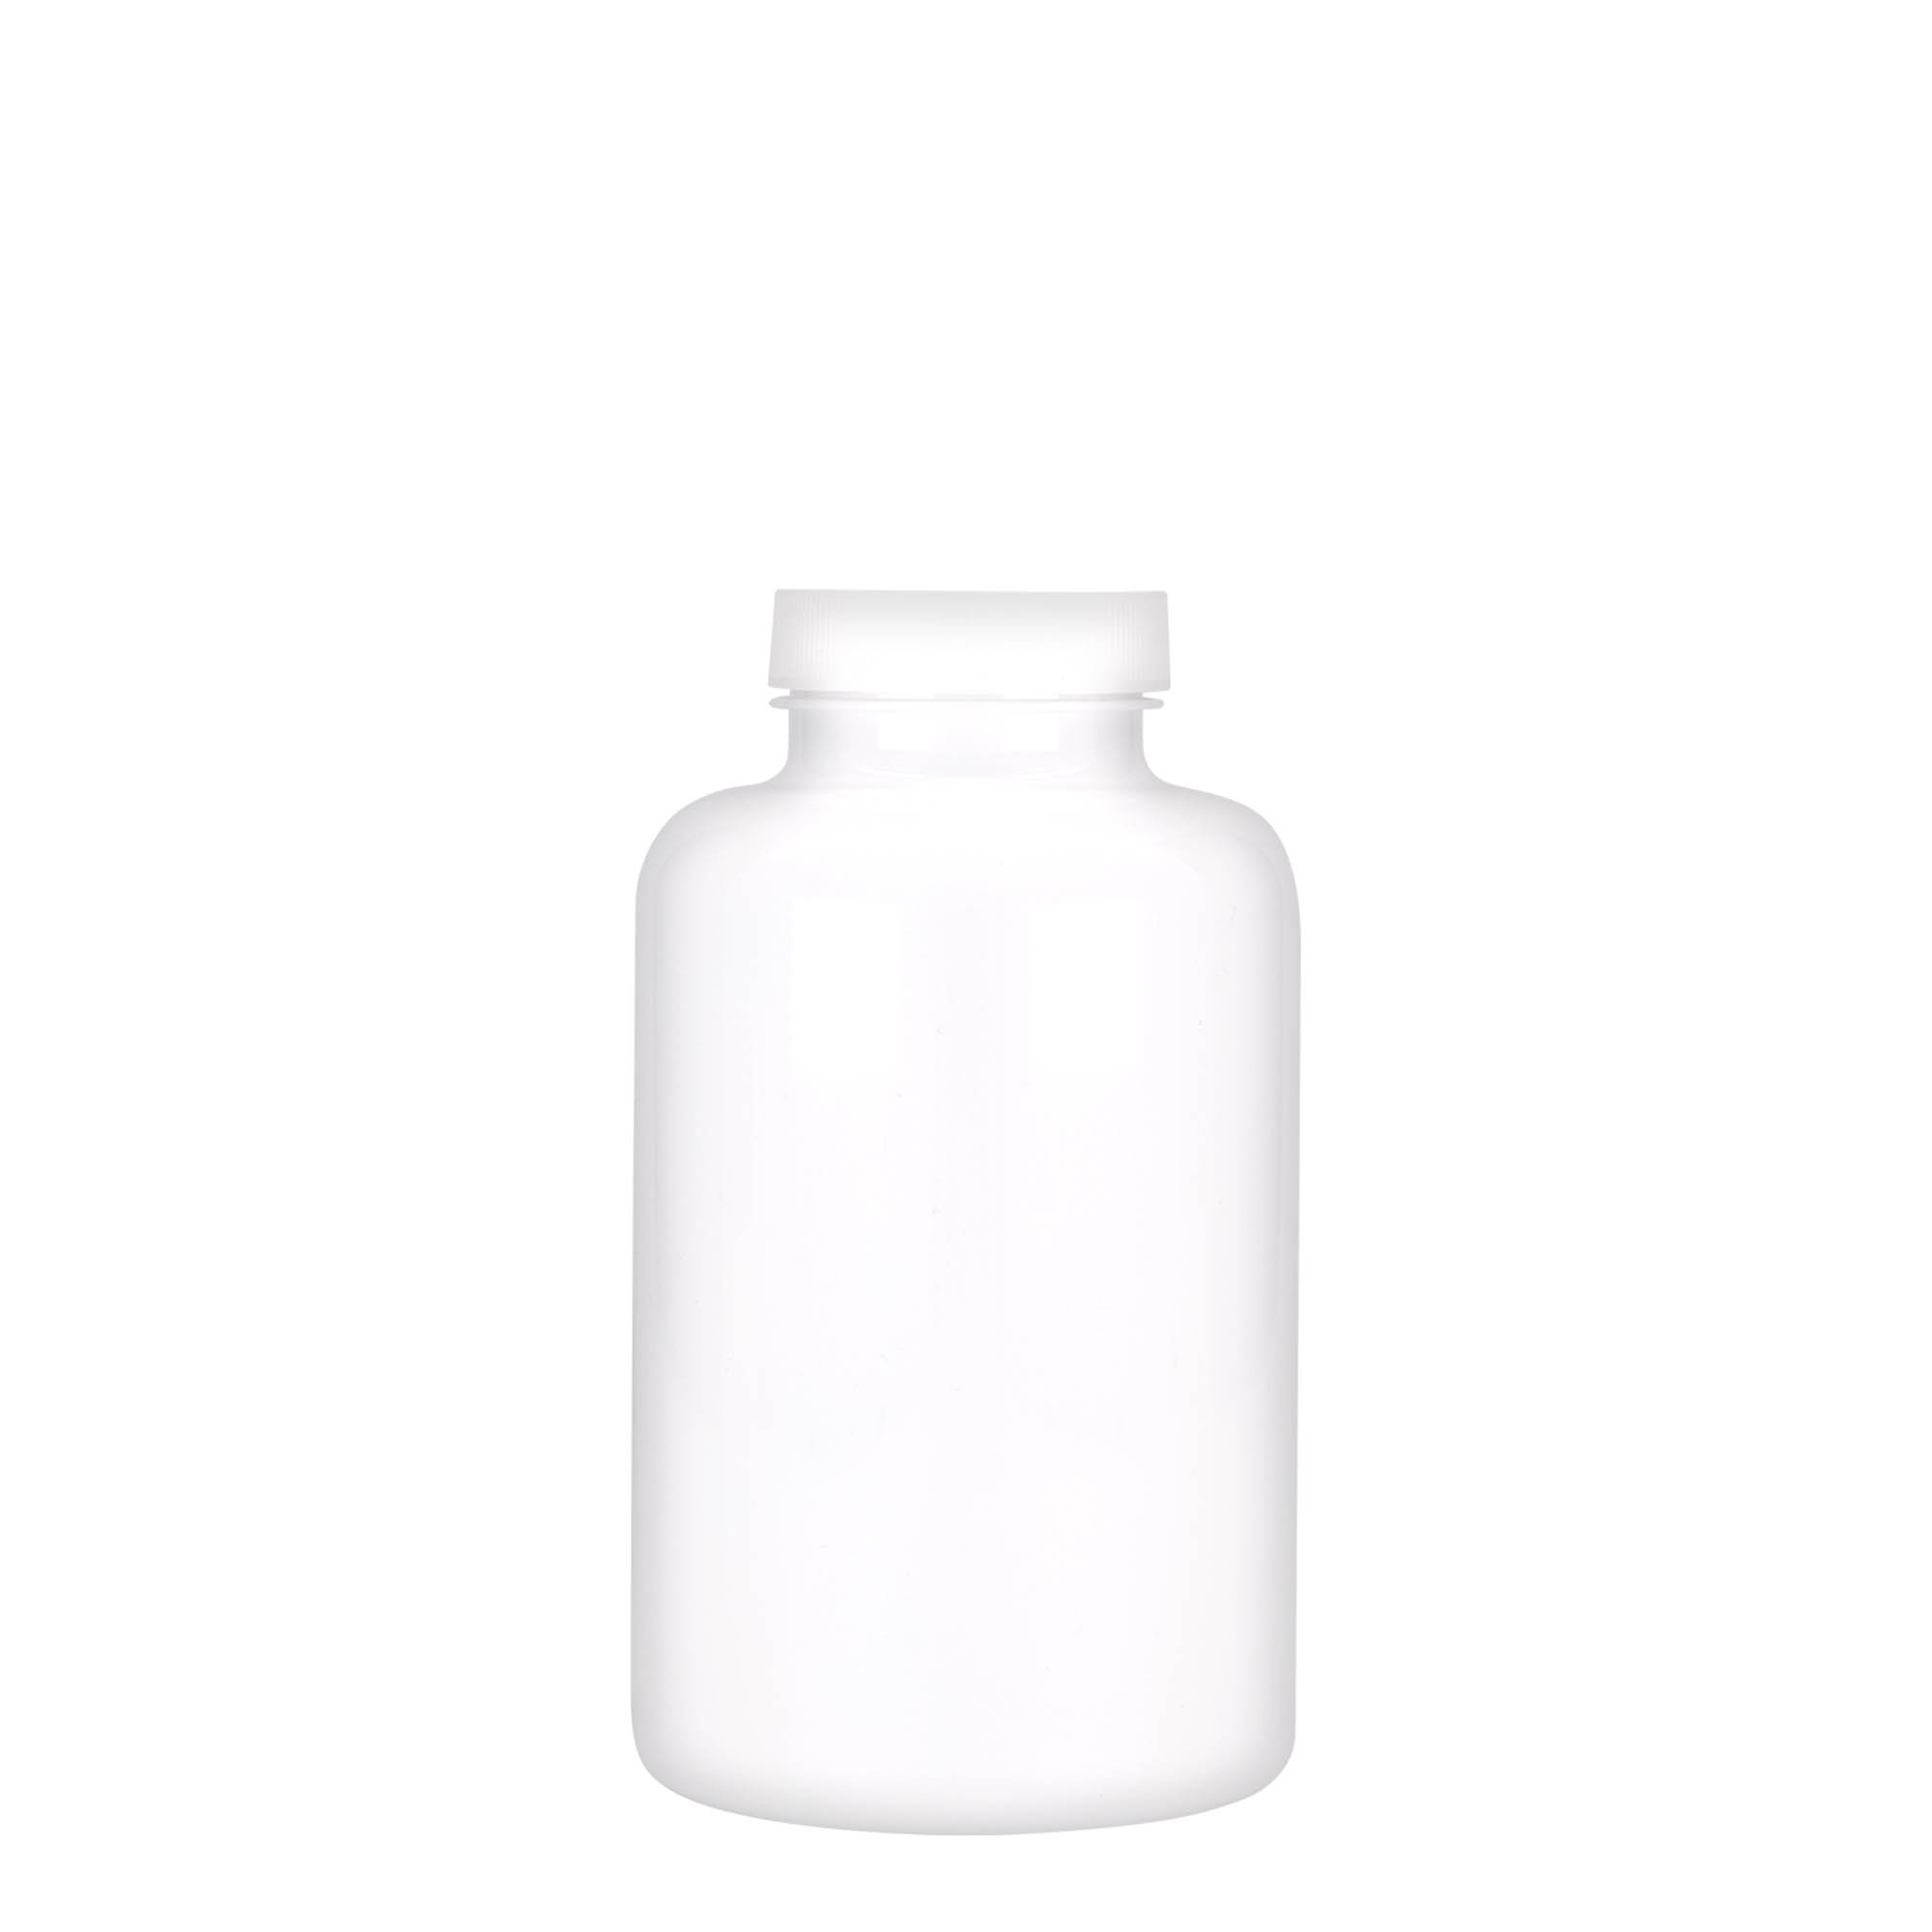 500 ml PET packer, plastic, white, closure: GPI 45/400